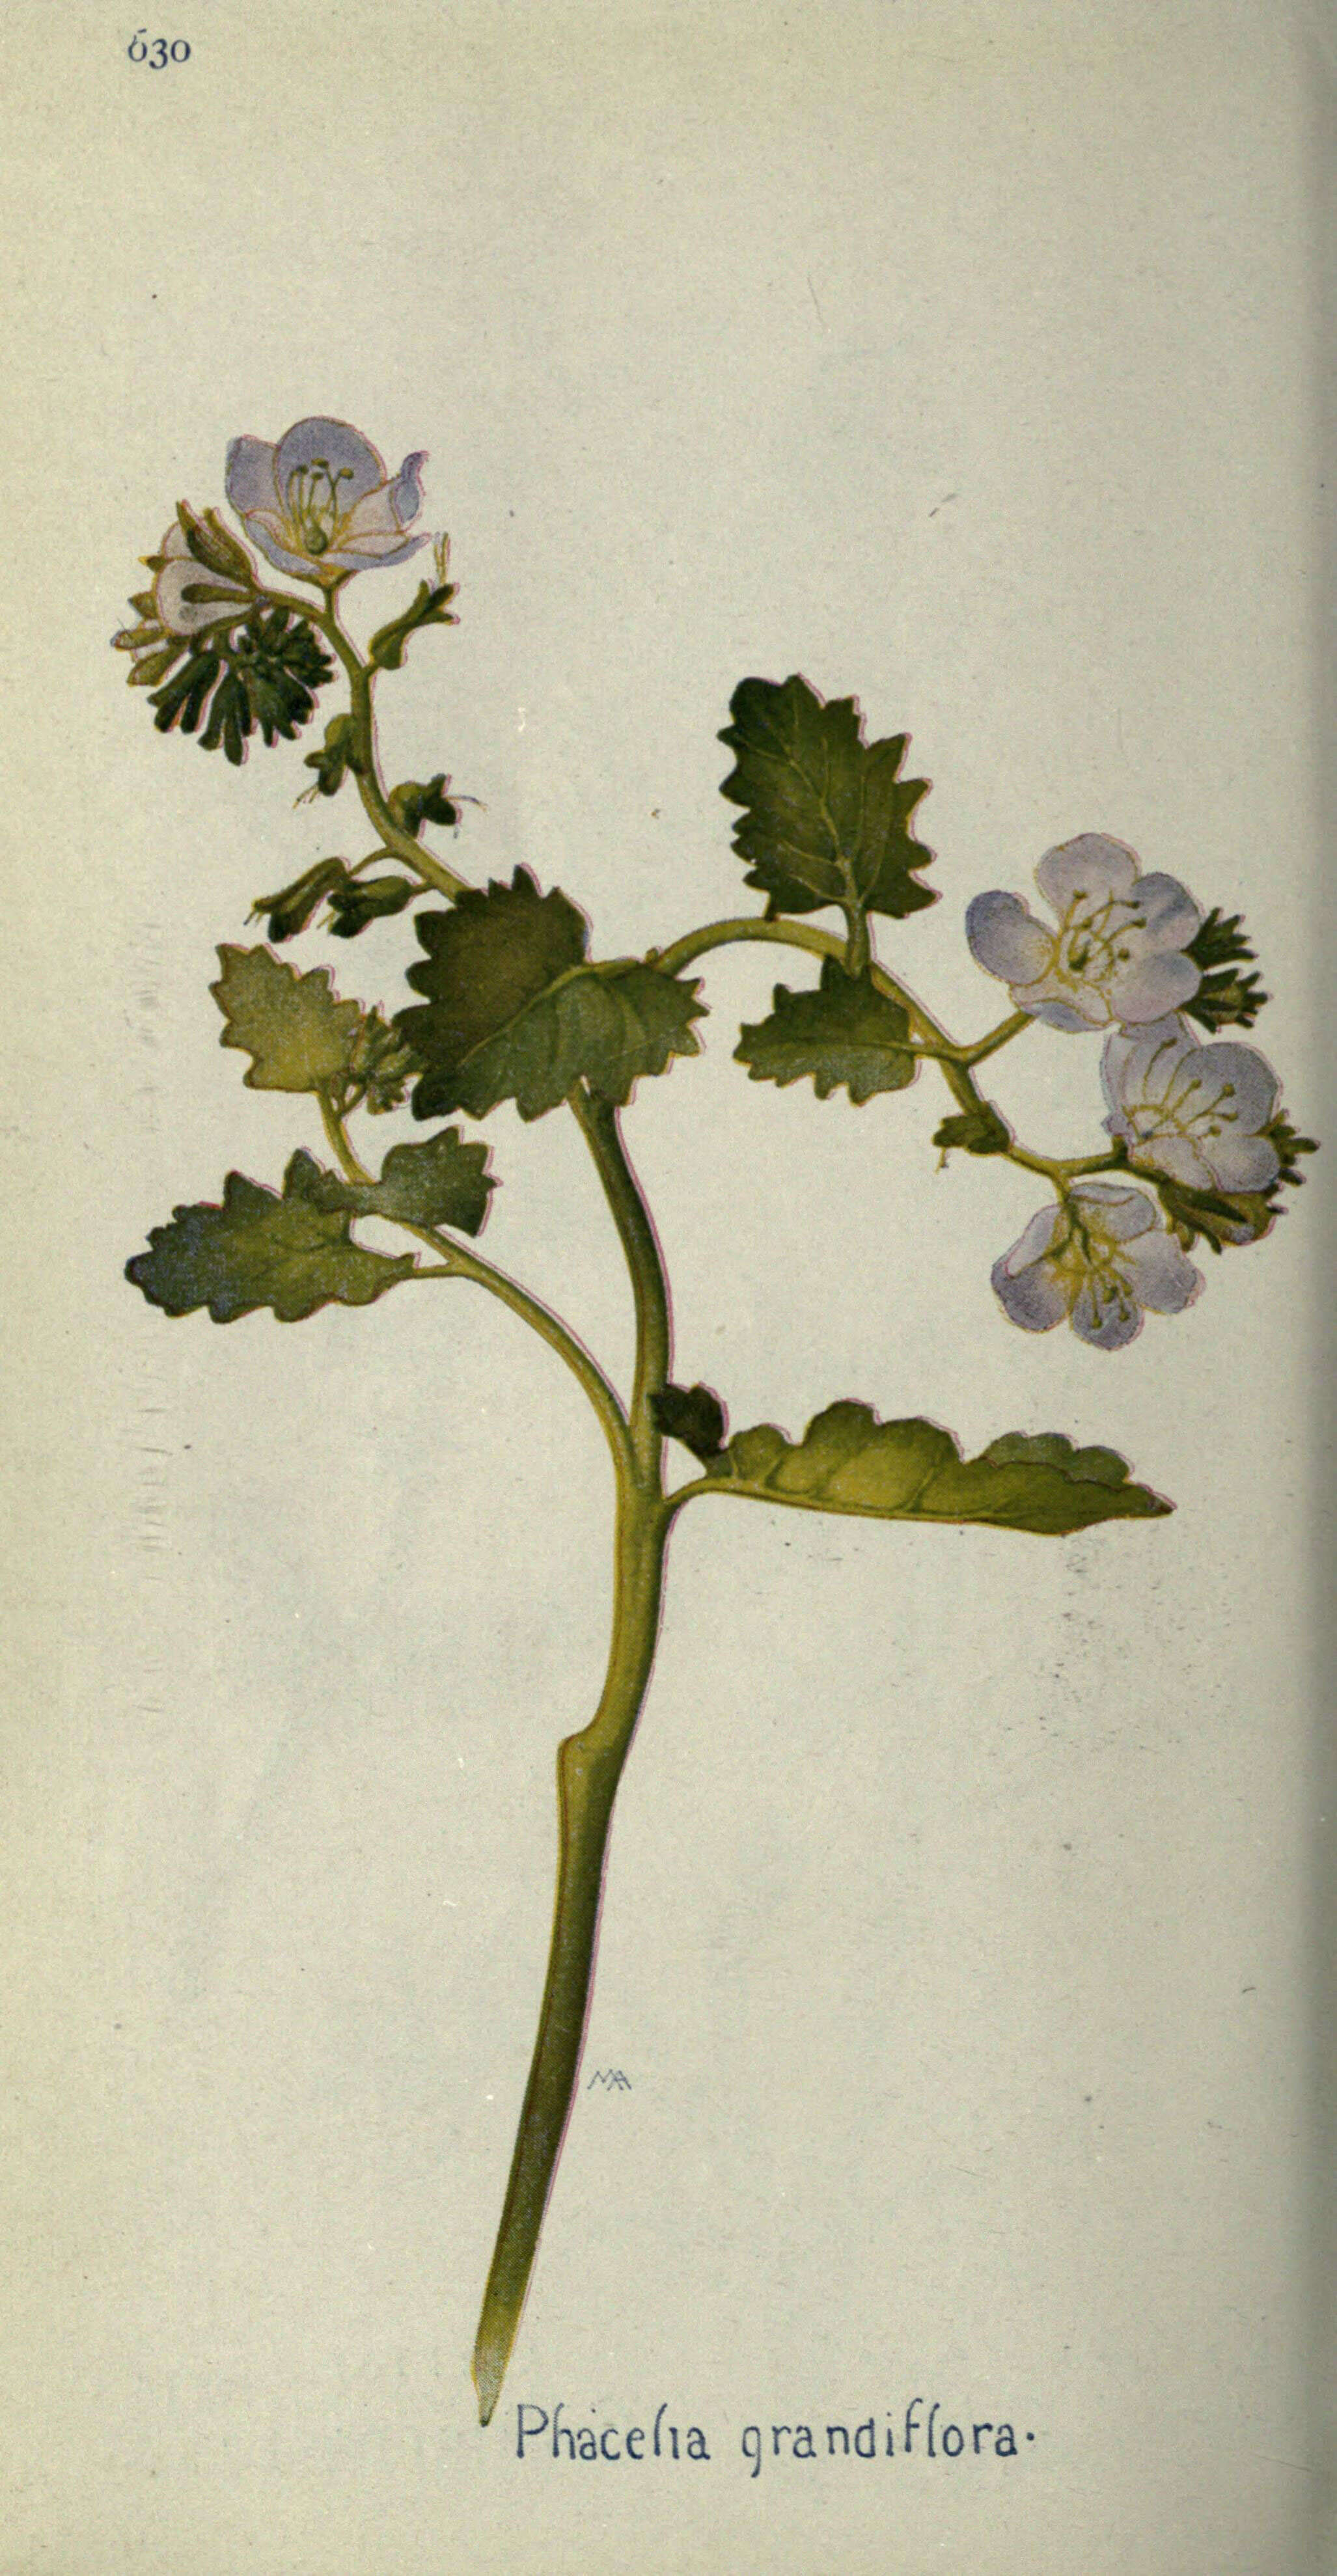 Image of largeflower phacelia